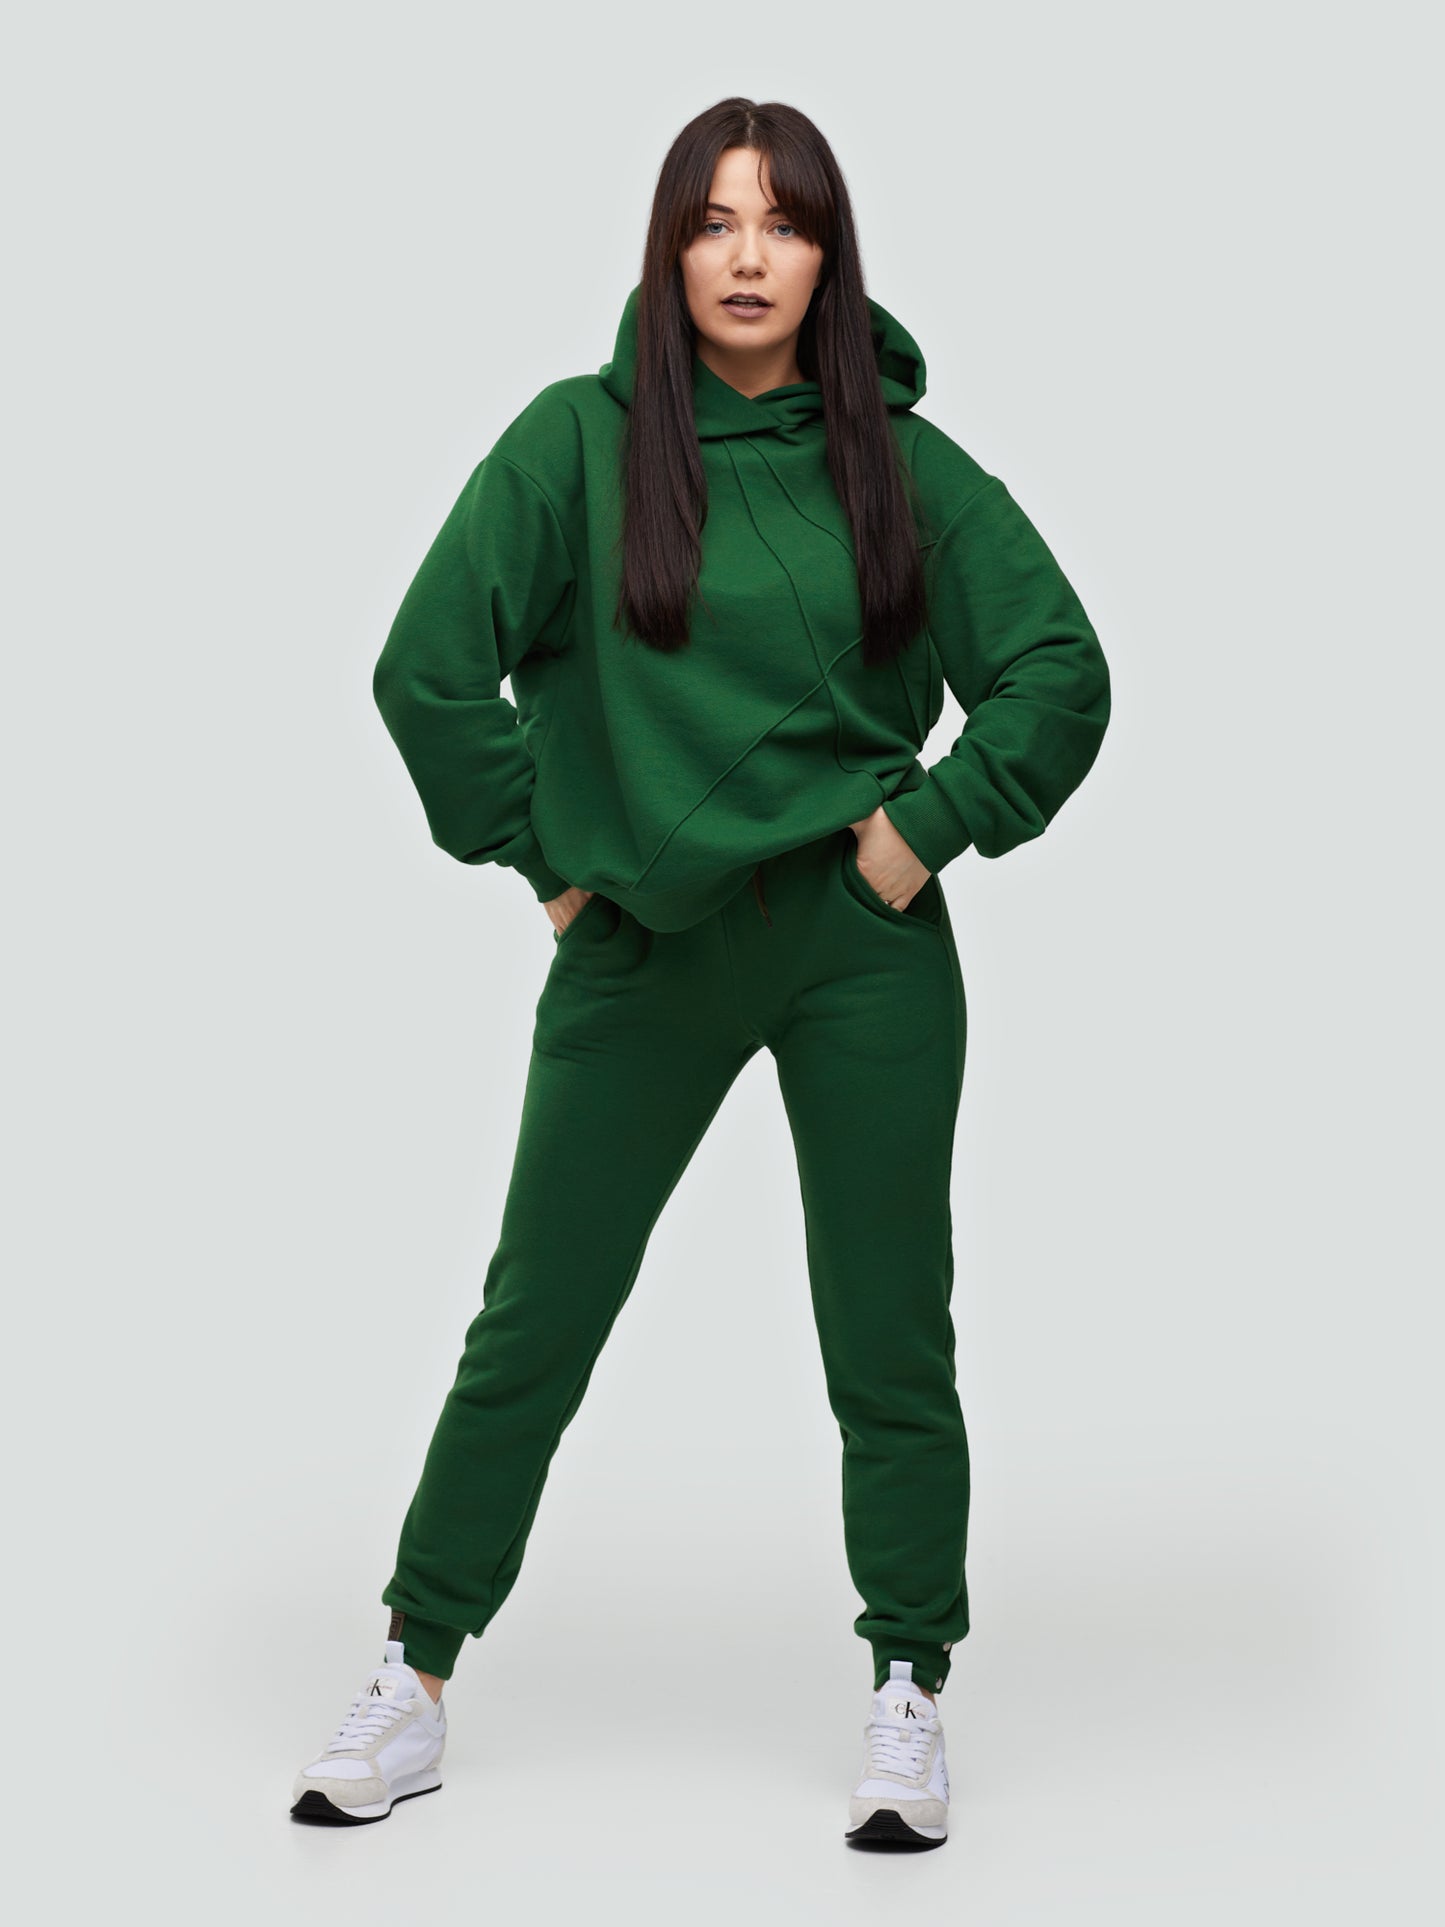 Žalias laisvalaikio kostiumėlis moterims "Comfort" be pūkelio